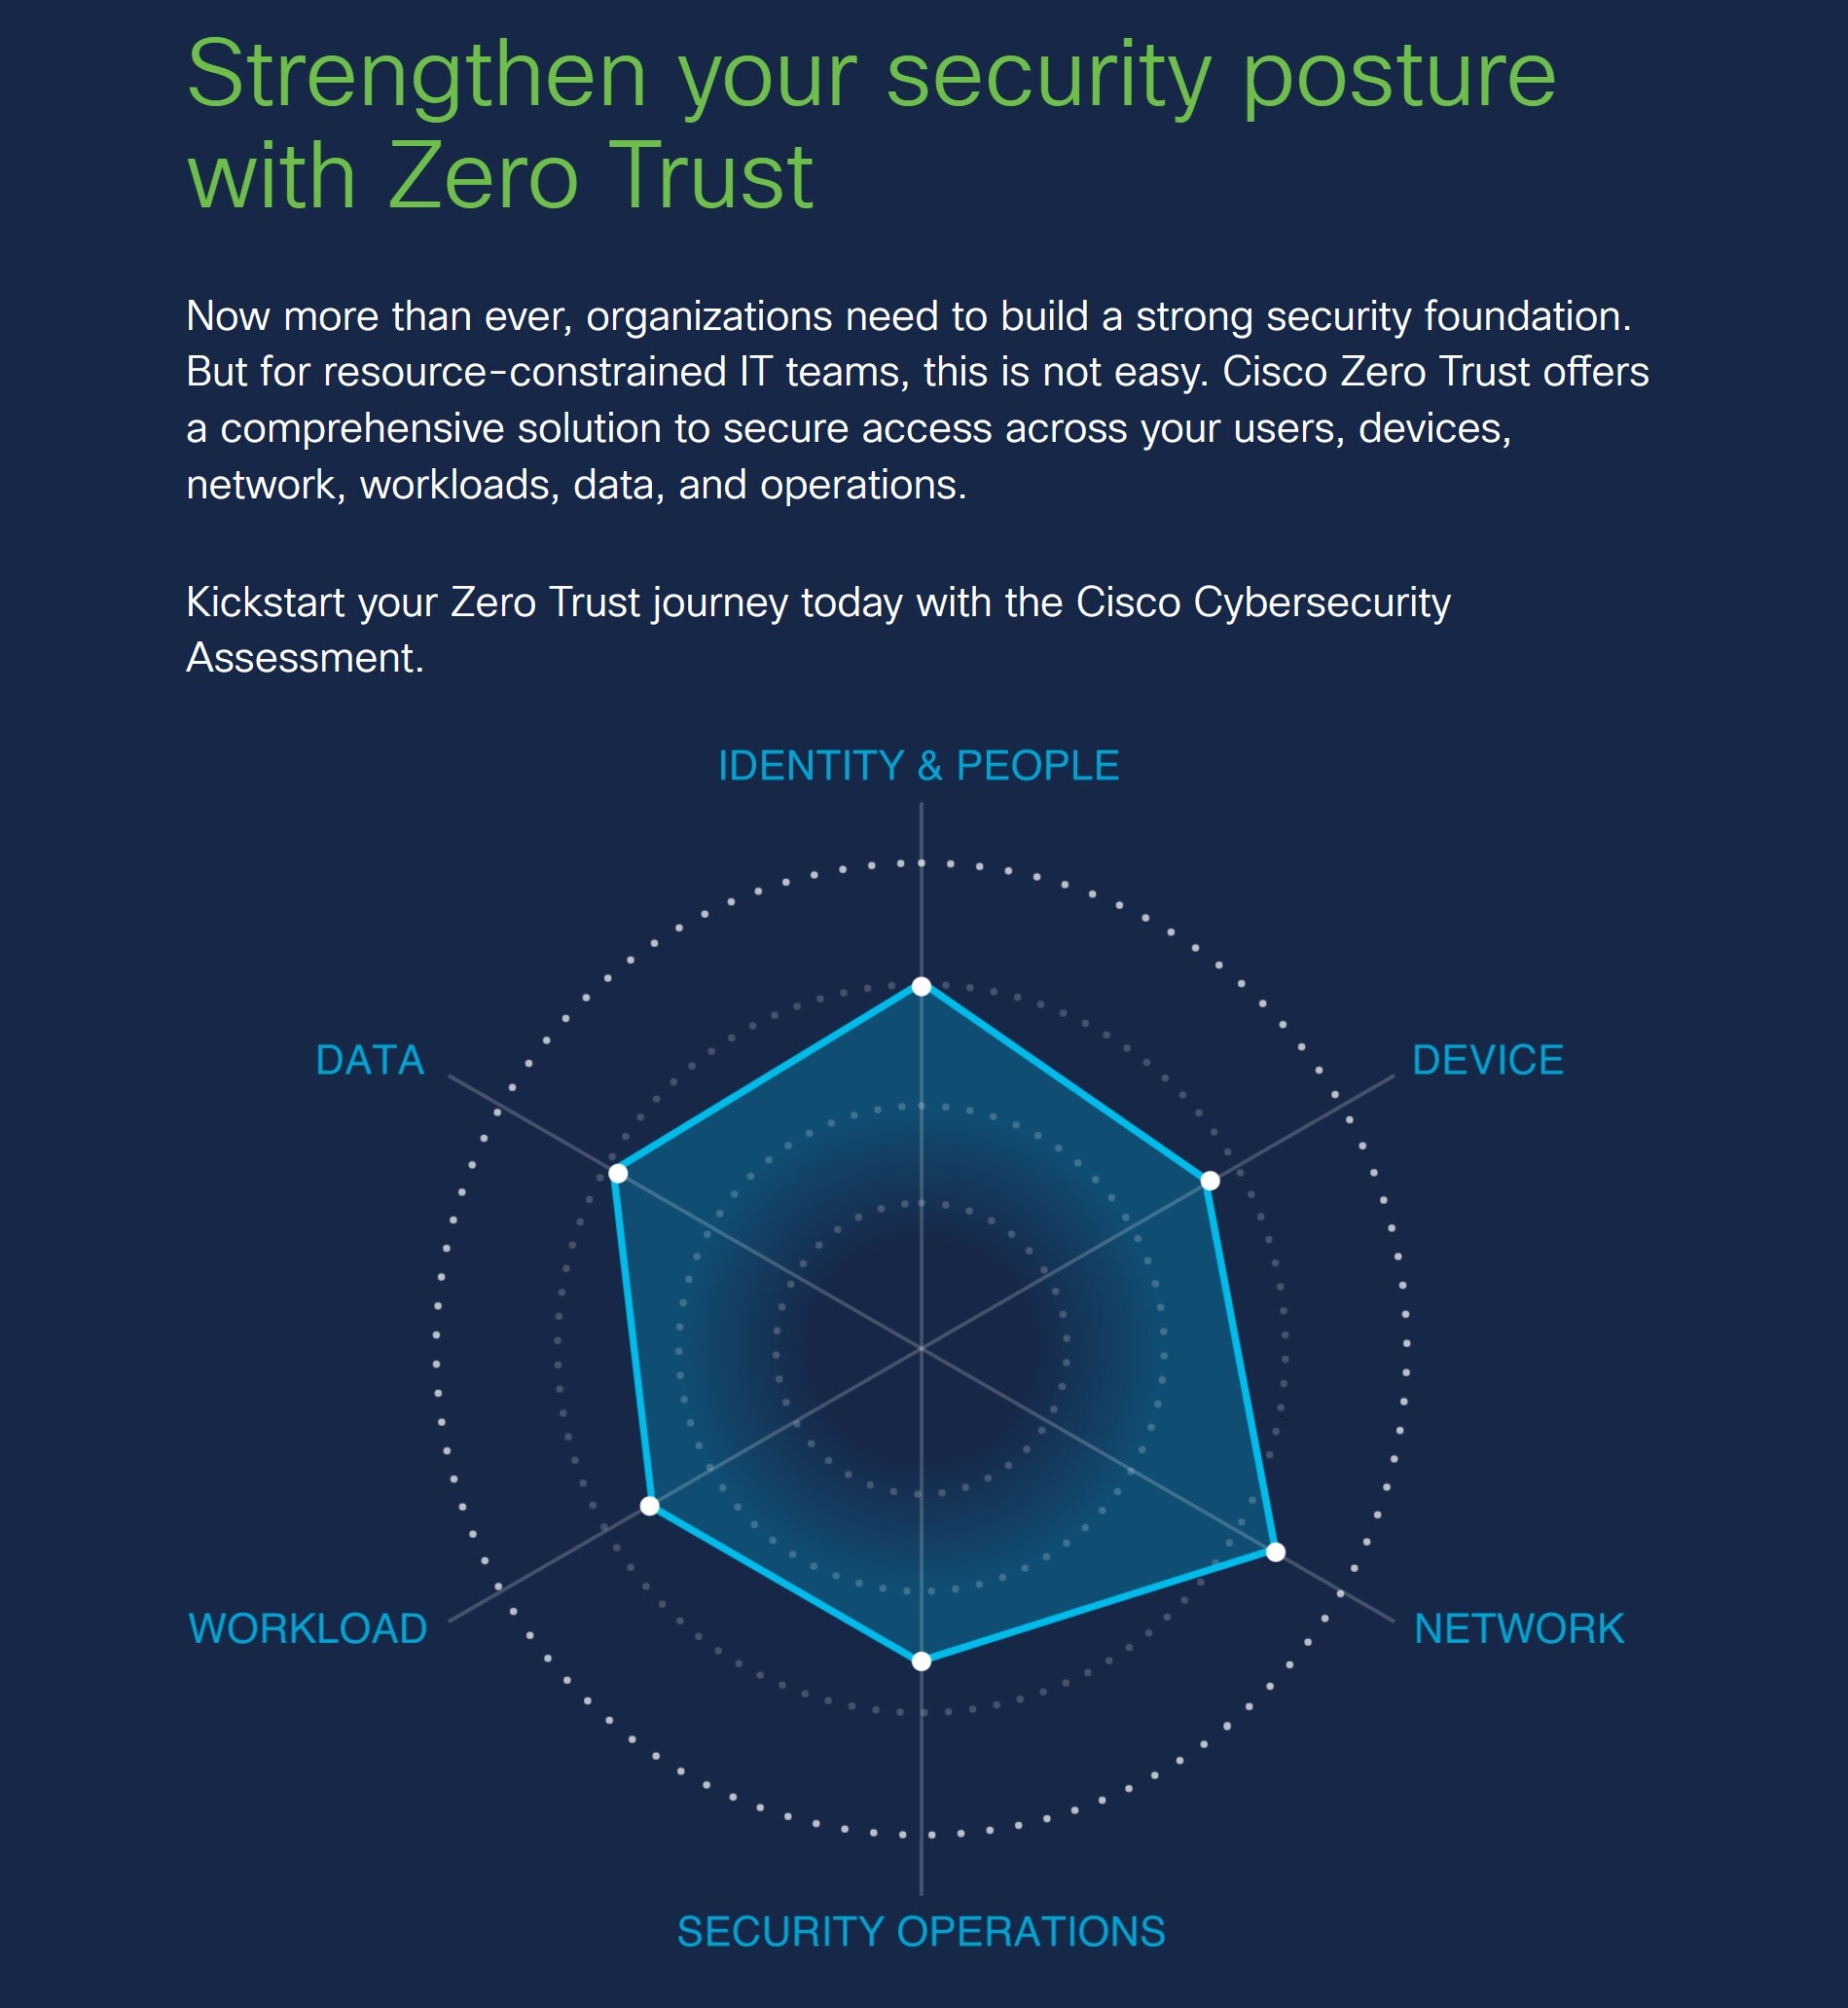 ซิสโก้เผยโฉมเครื่องมือใหม่ ช่วยเอสเอ็มอีประเมินความพร้อมด้าน "ไซเบอร์ซีเคียวริตี้" ผ่านกลยุทธ์ "Zero Trust"